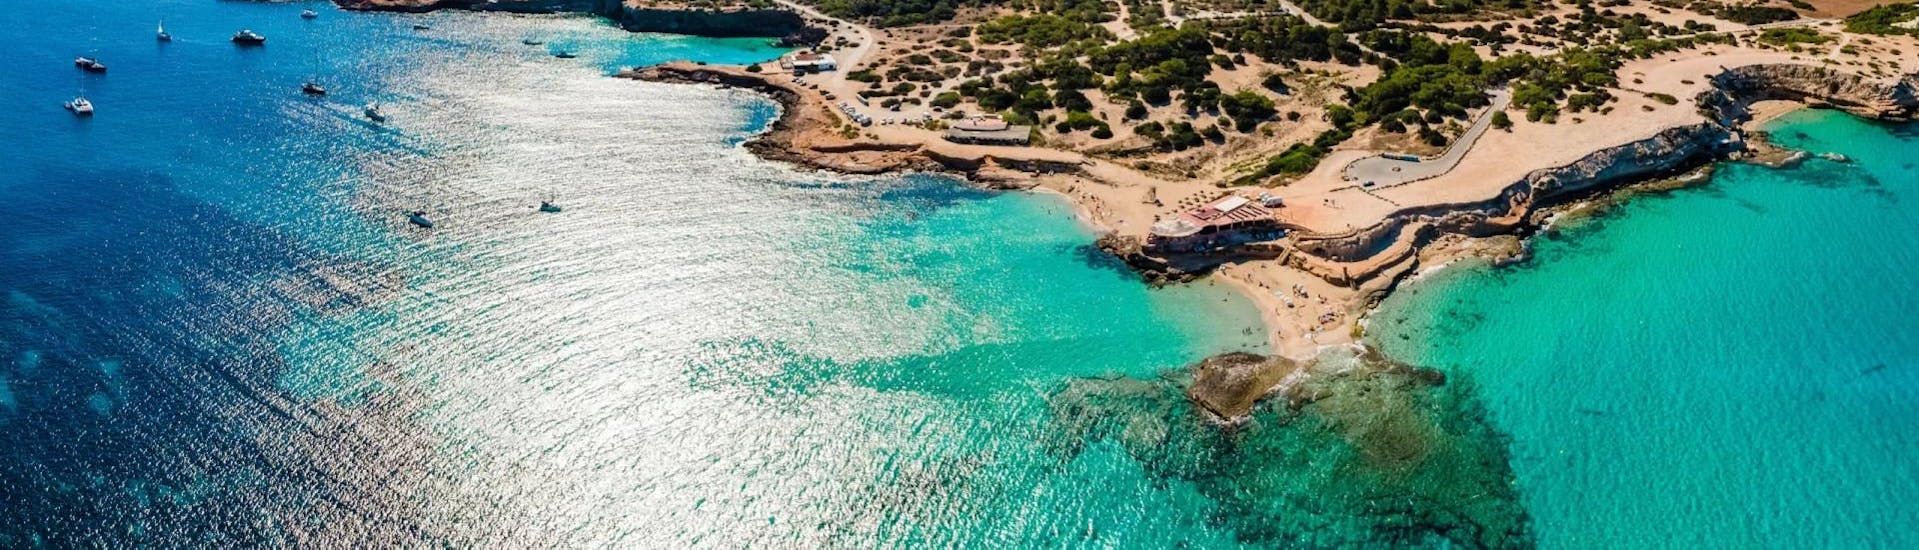 Photo du paysage de la côte d'Ibiza lors des excursions en bateau ou de la plongée par Arenal Diving & Boat Tours Ibiza.